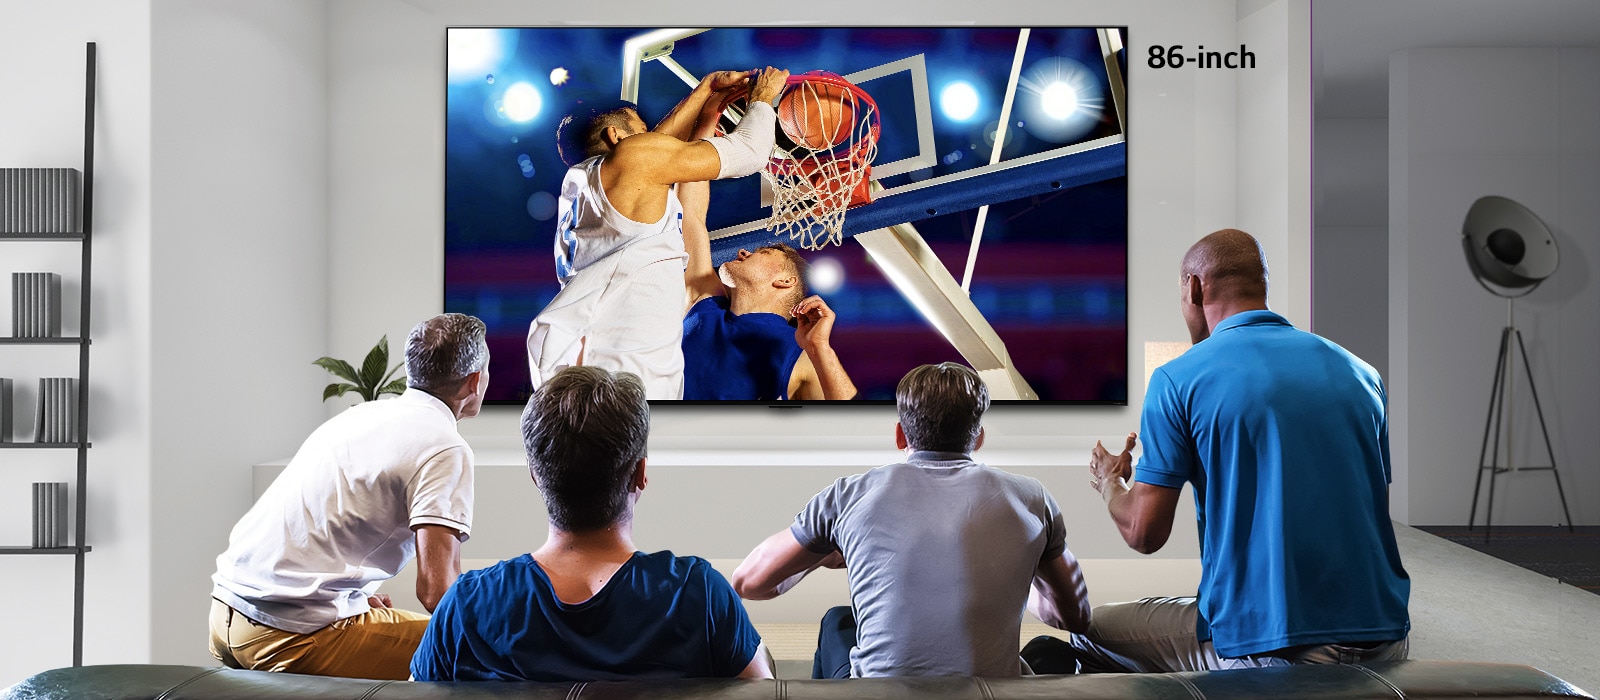 Rückansicht eines an der Wand montierten Fernsehers, der ein Basketballspiel zeigt, das von vier Männern verfolgt wird. Das Scrollen von links nach rechts zeigt den Größenunterschied zwischen dem 43-Zoll- und dem 86-Zoll-Bildschirm.